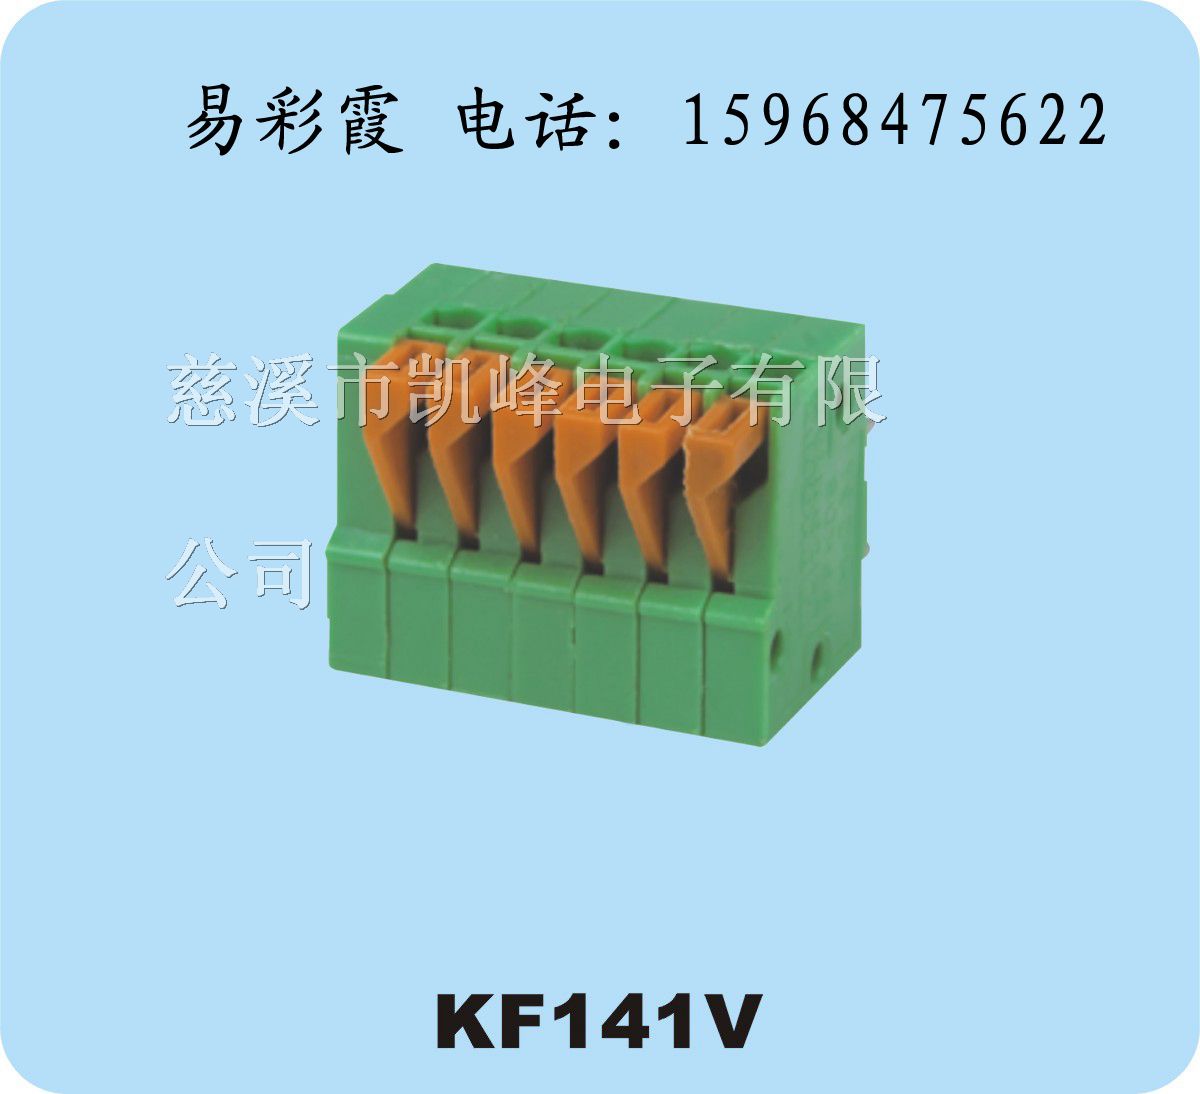 接线柱,端子台,深圳接线端子,KF141V 2.54mm，